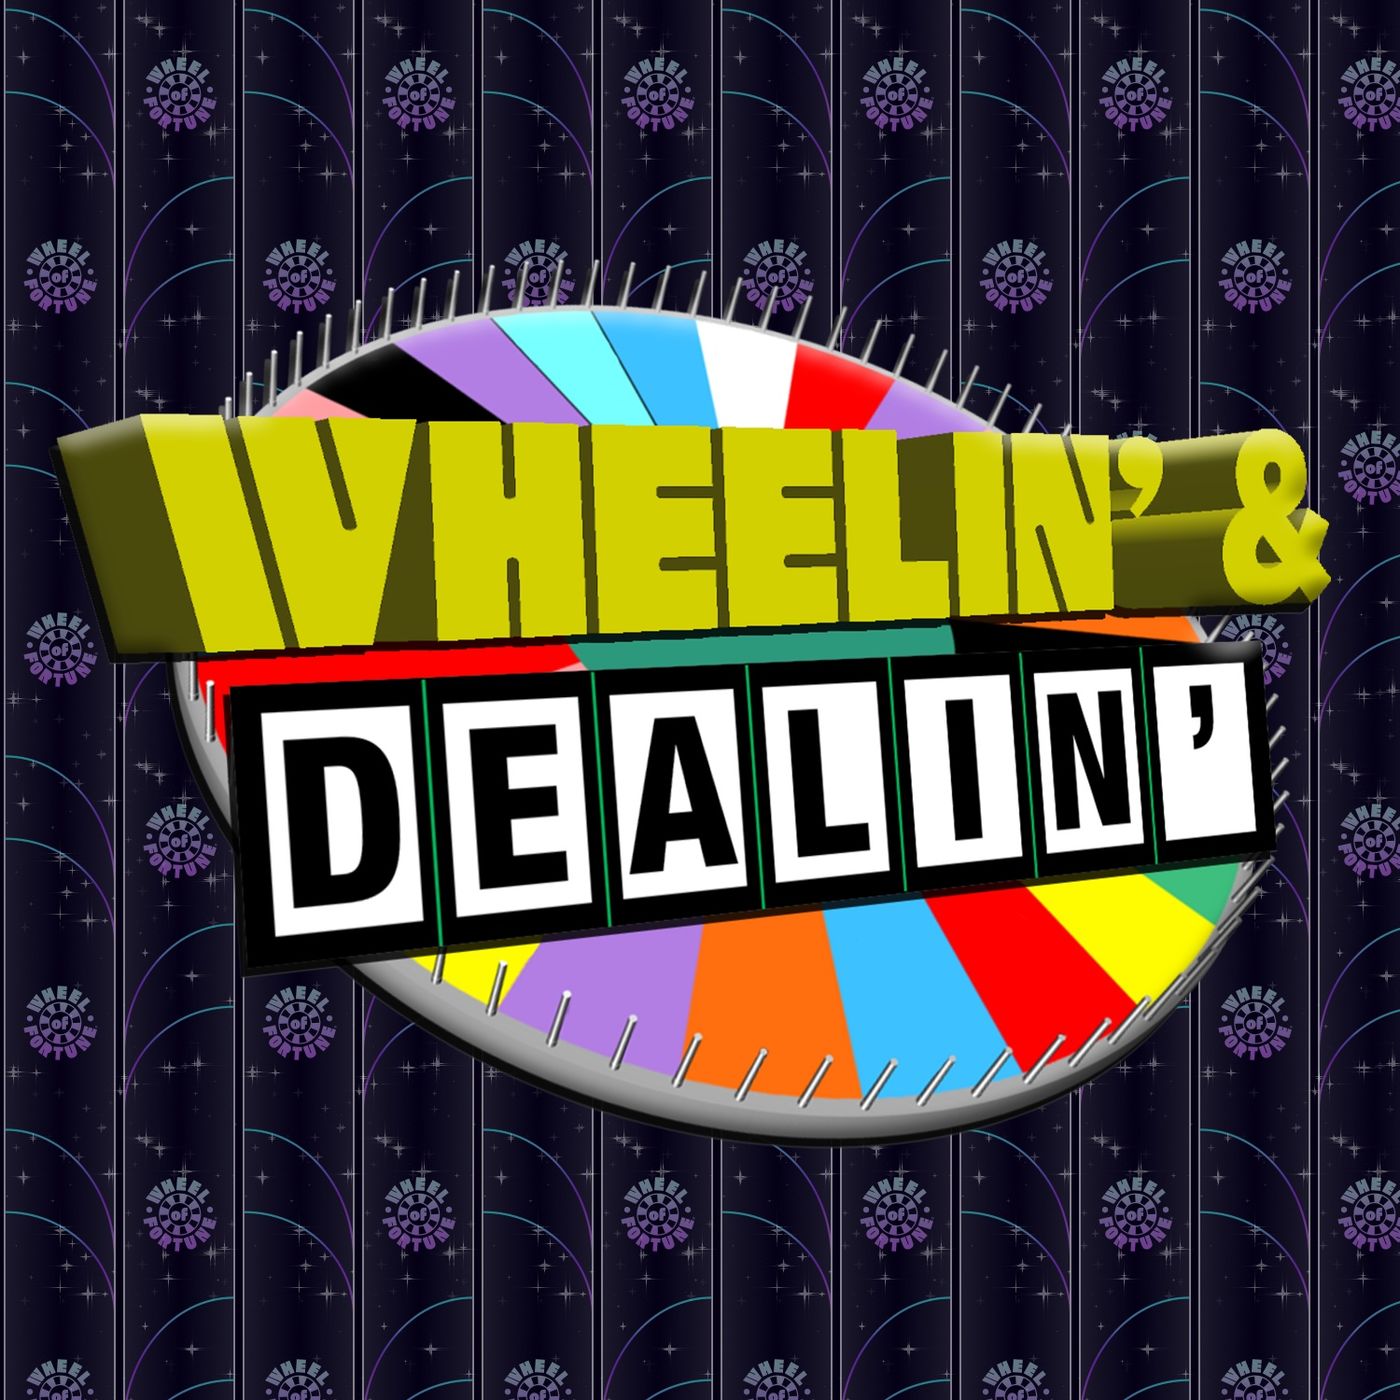 Wheelin' & Dealin' EPISODE 2: I'VE GOT A GOLDEN TICKET